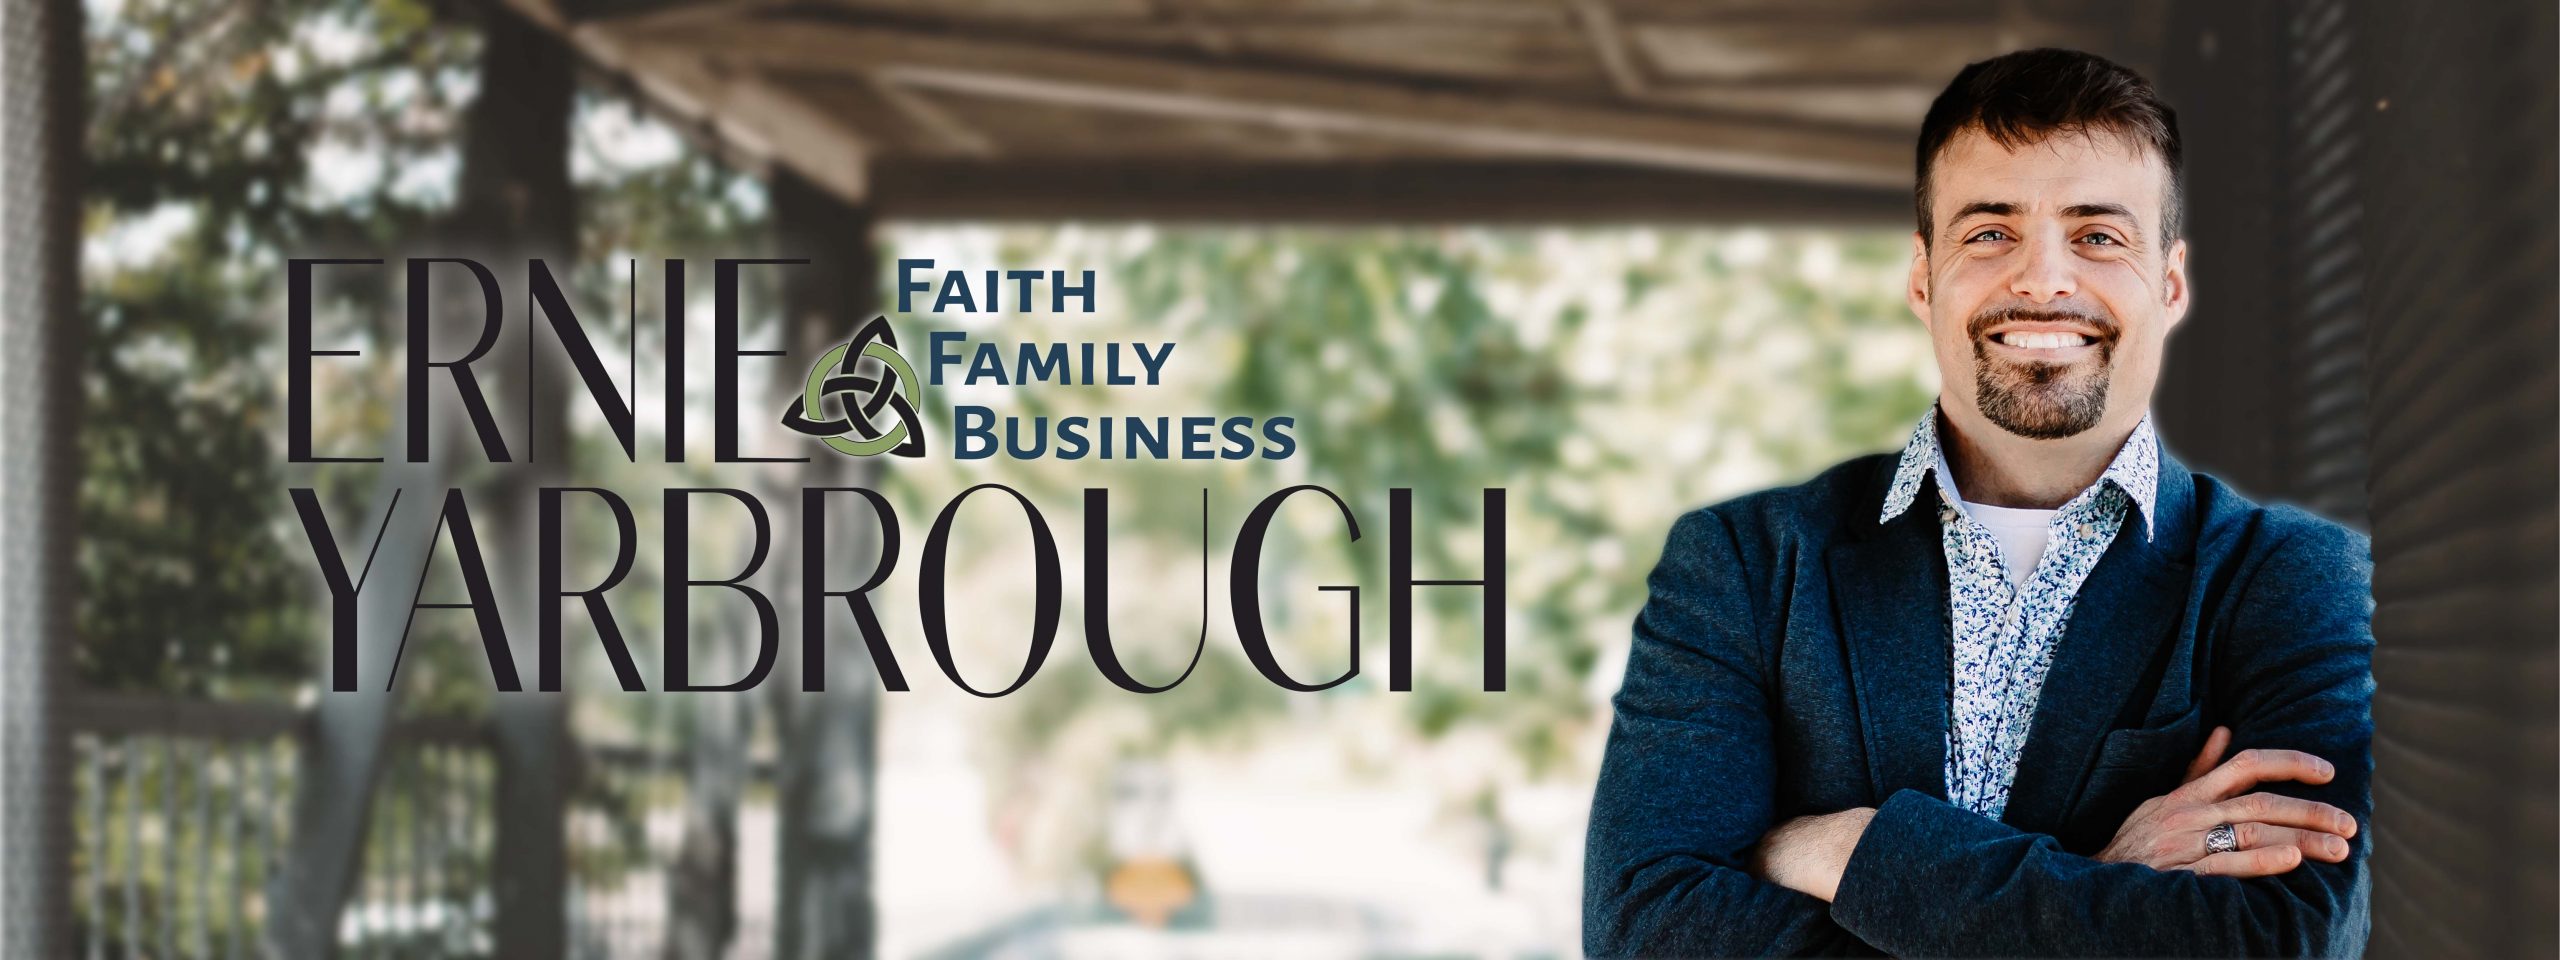 Ernie Yarbrough: Faith | Family | Business